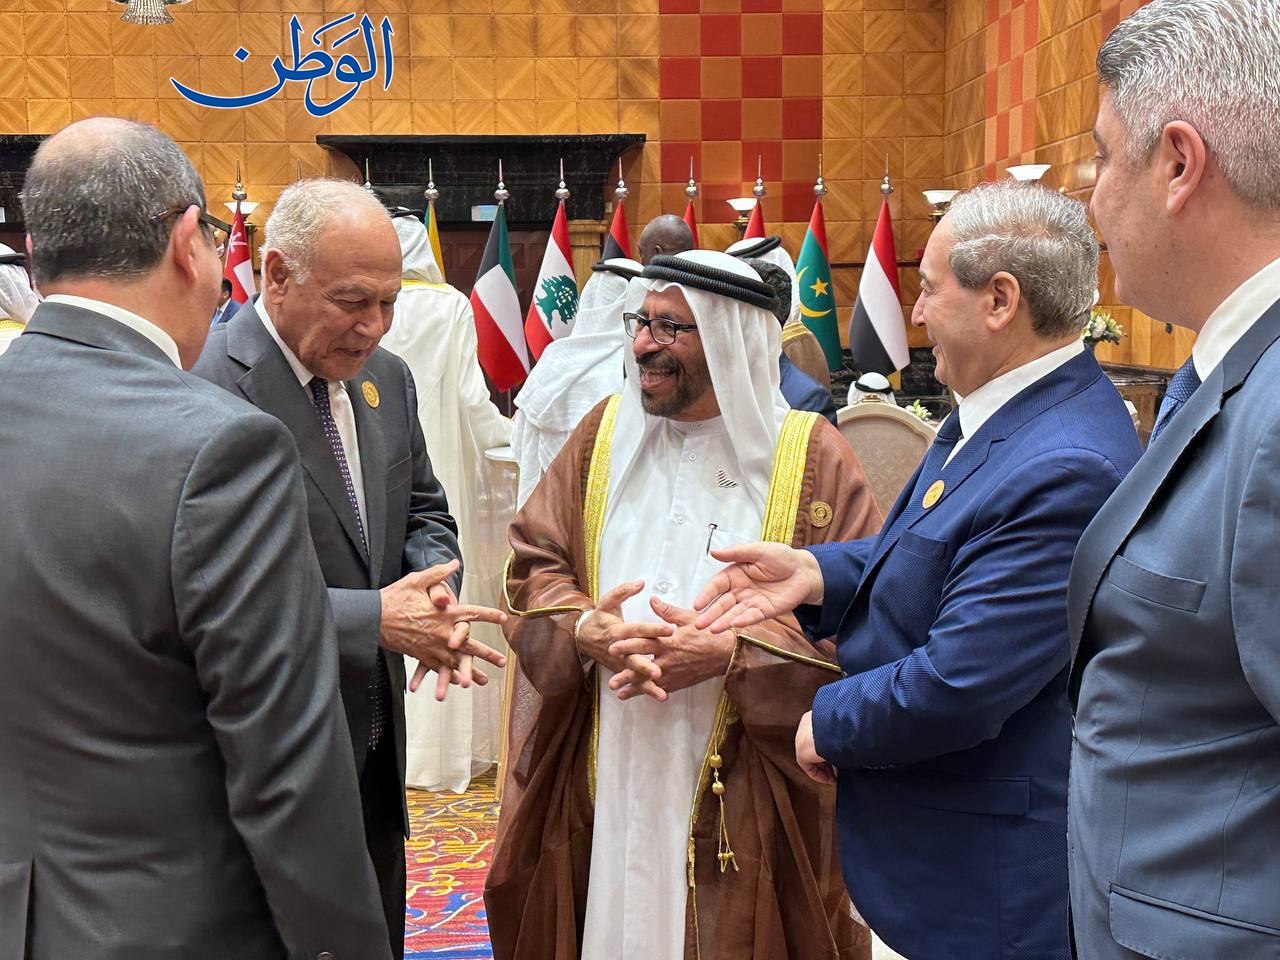 الأمين العام لجامعة الدول العربية ينضم إلى وزير الخارجية السوري ووزير الدولة للشؤون الخارجية الإماراتي في لقاء سريع قبل بدء الاجتماع